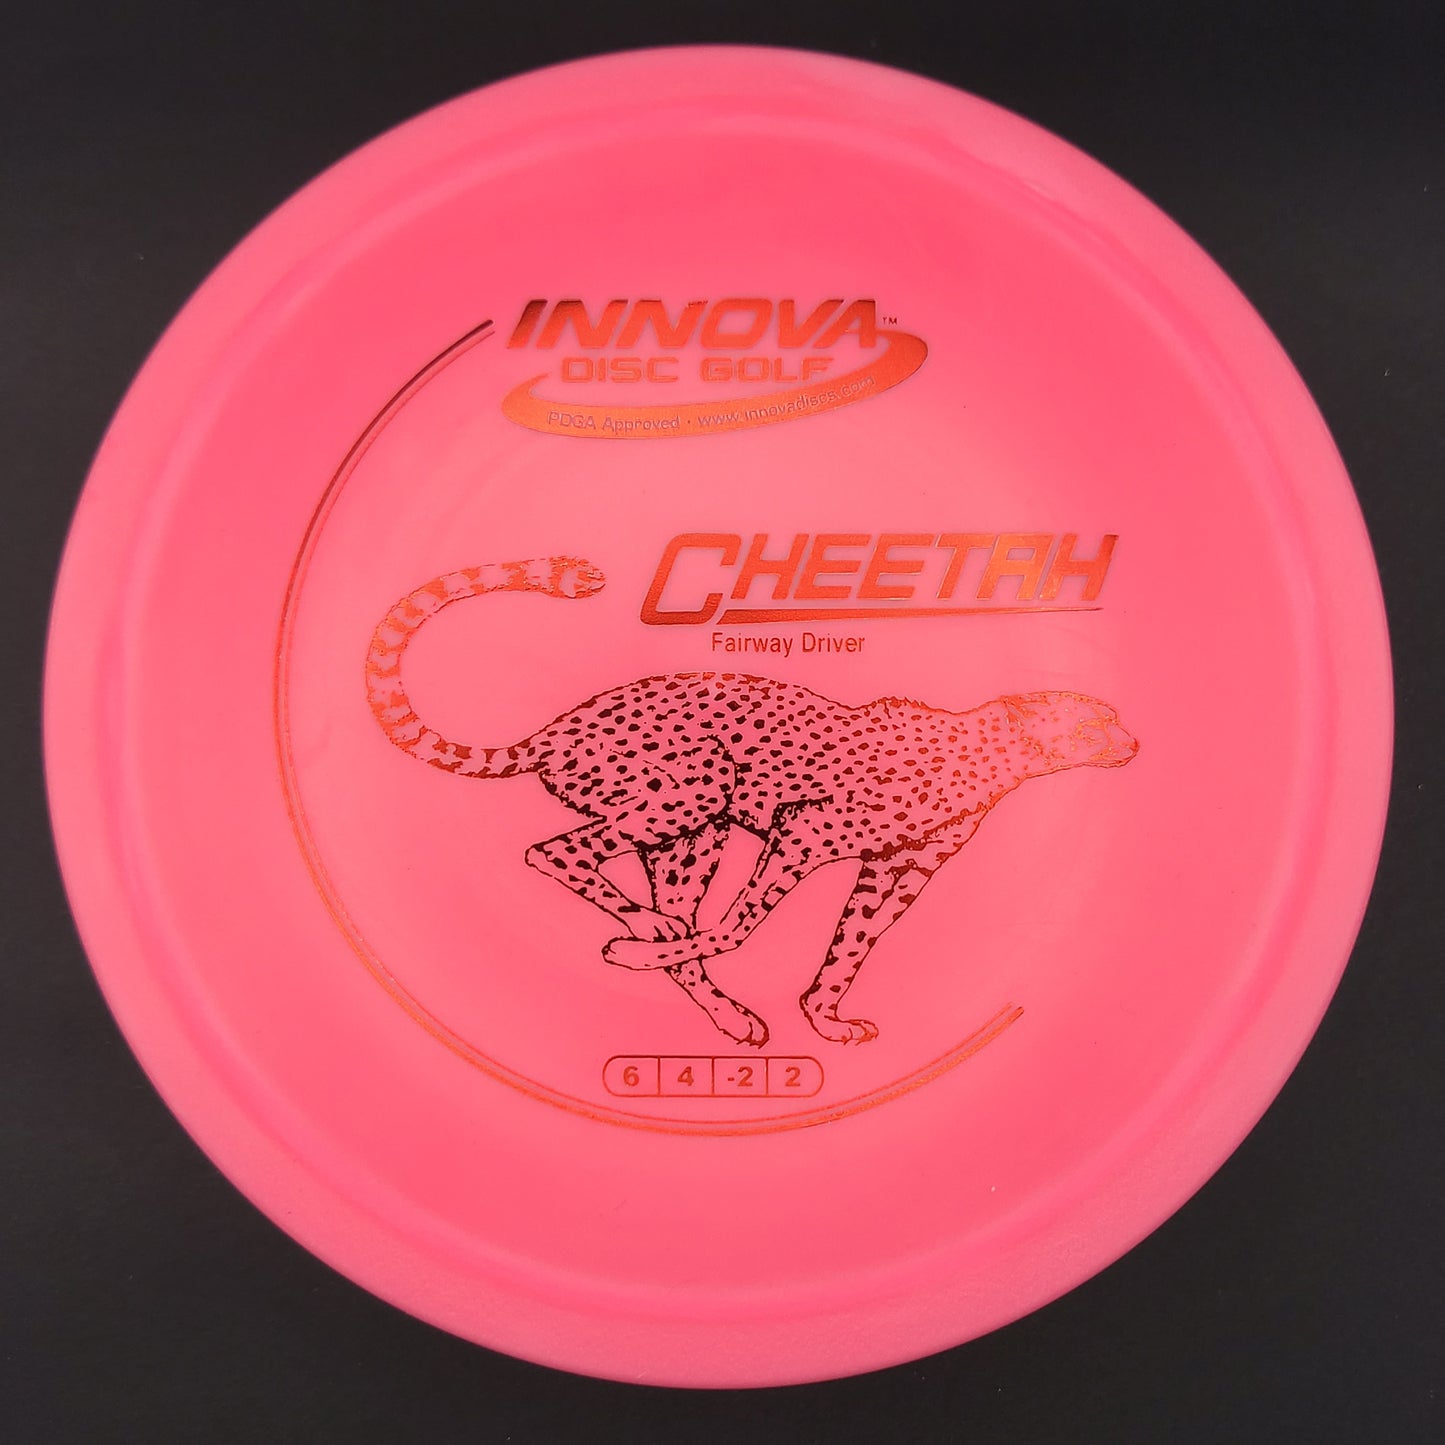 Innova - Cheetah - DX